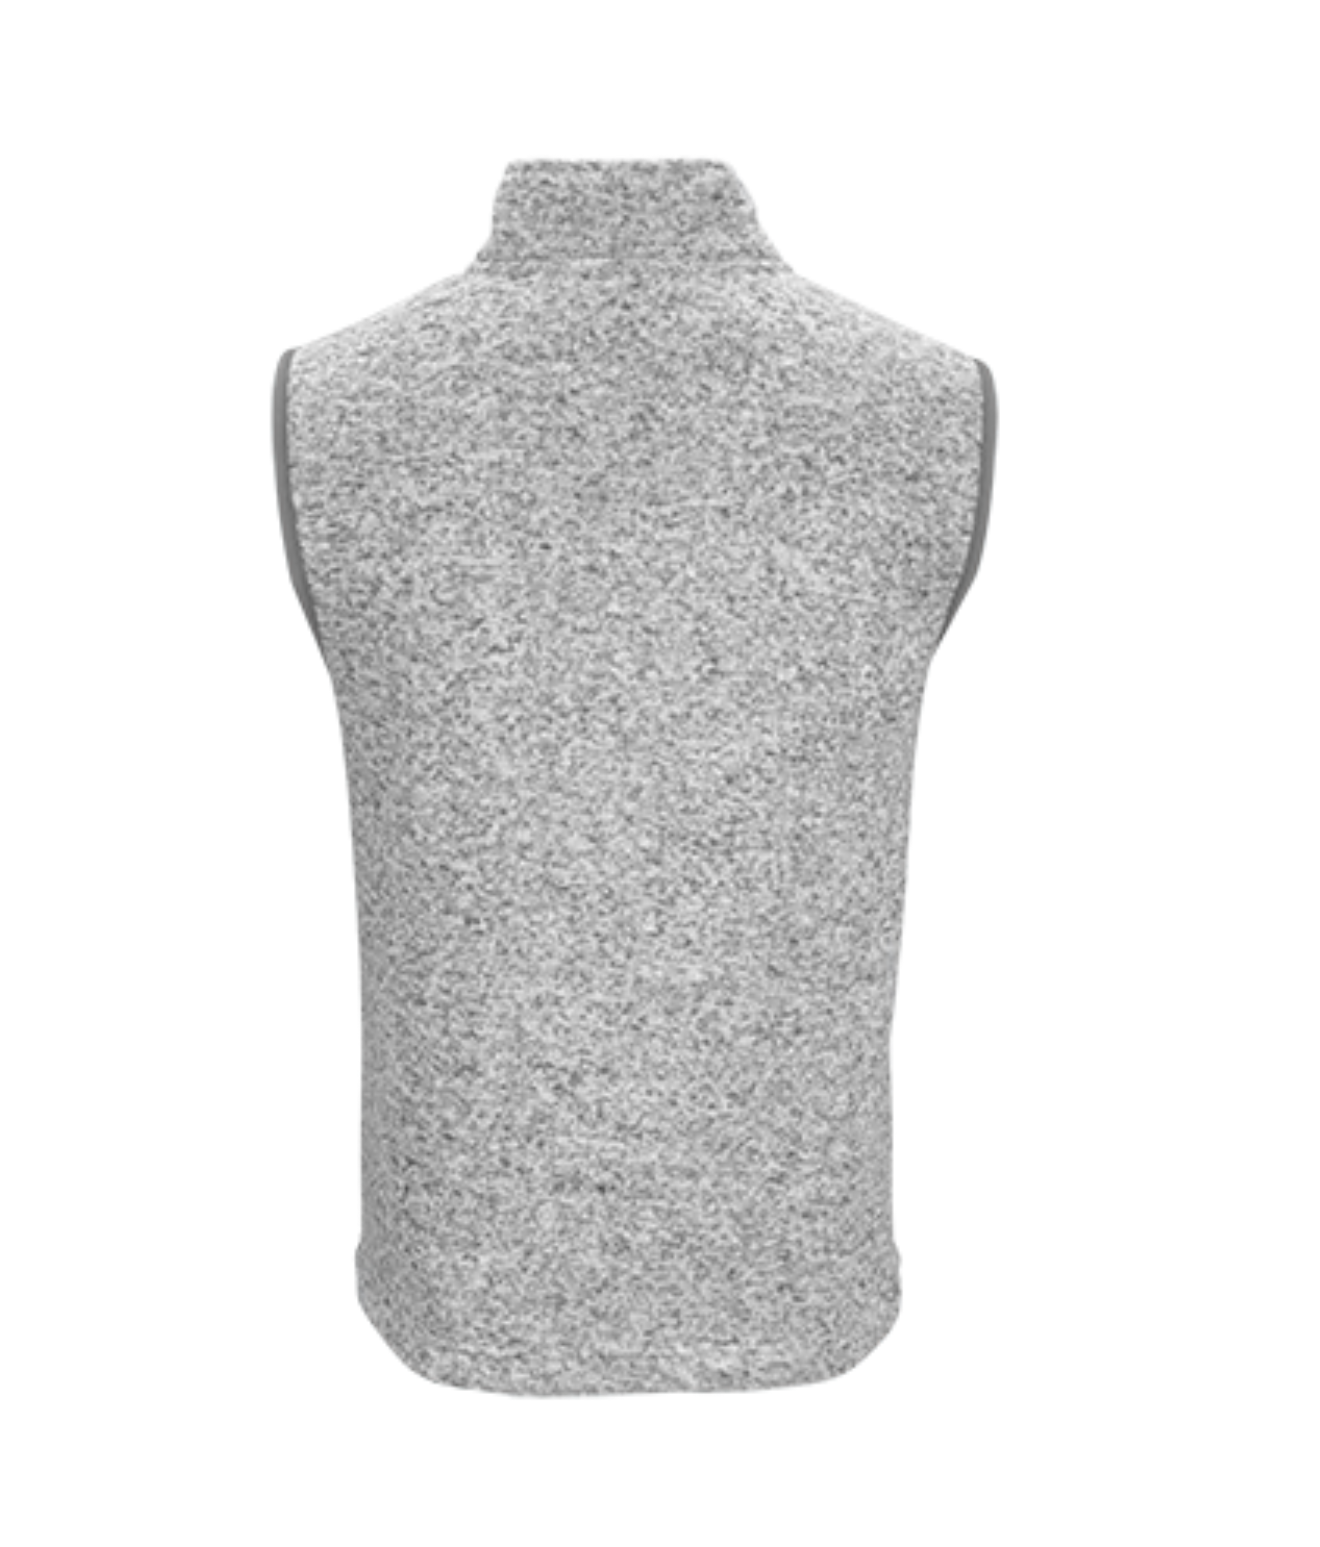 Men's Summit Sweater Fleece Vest